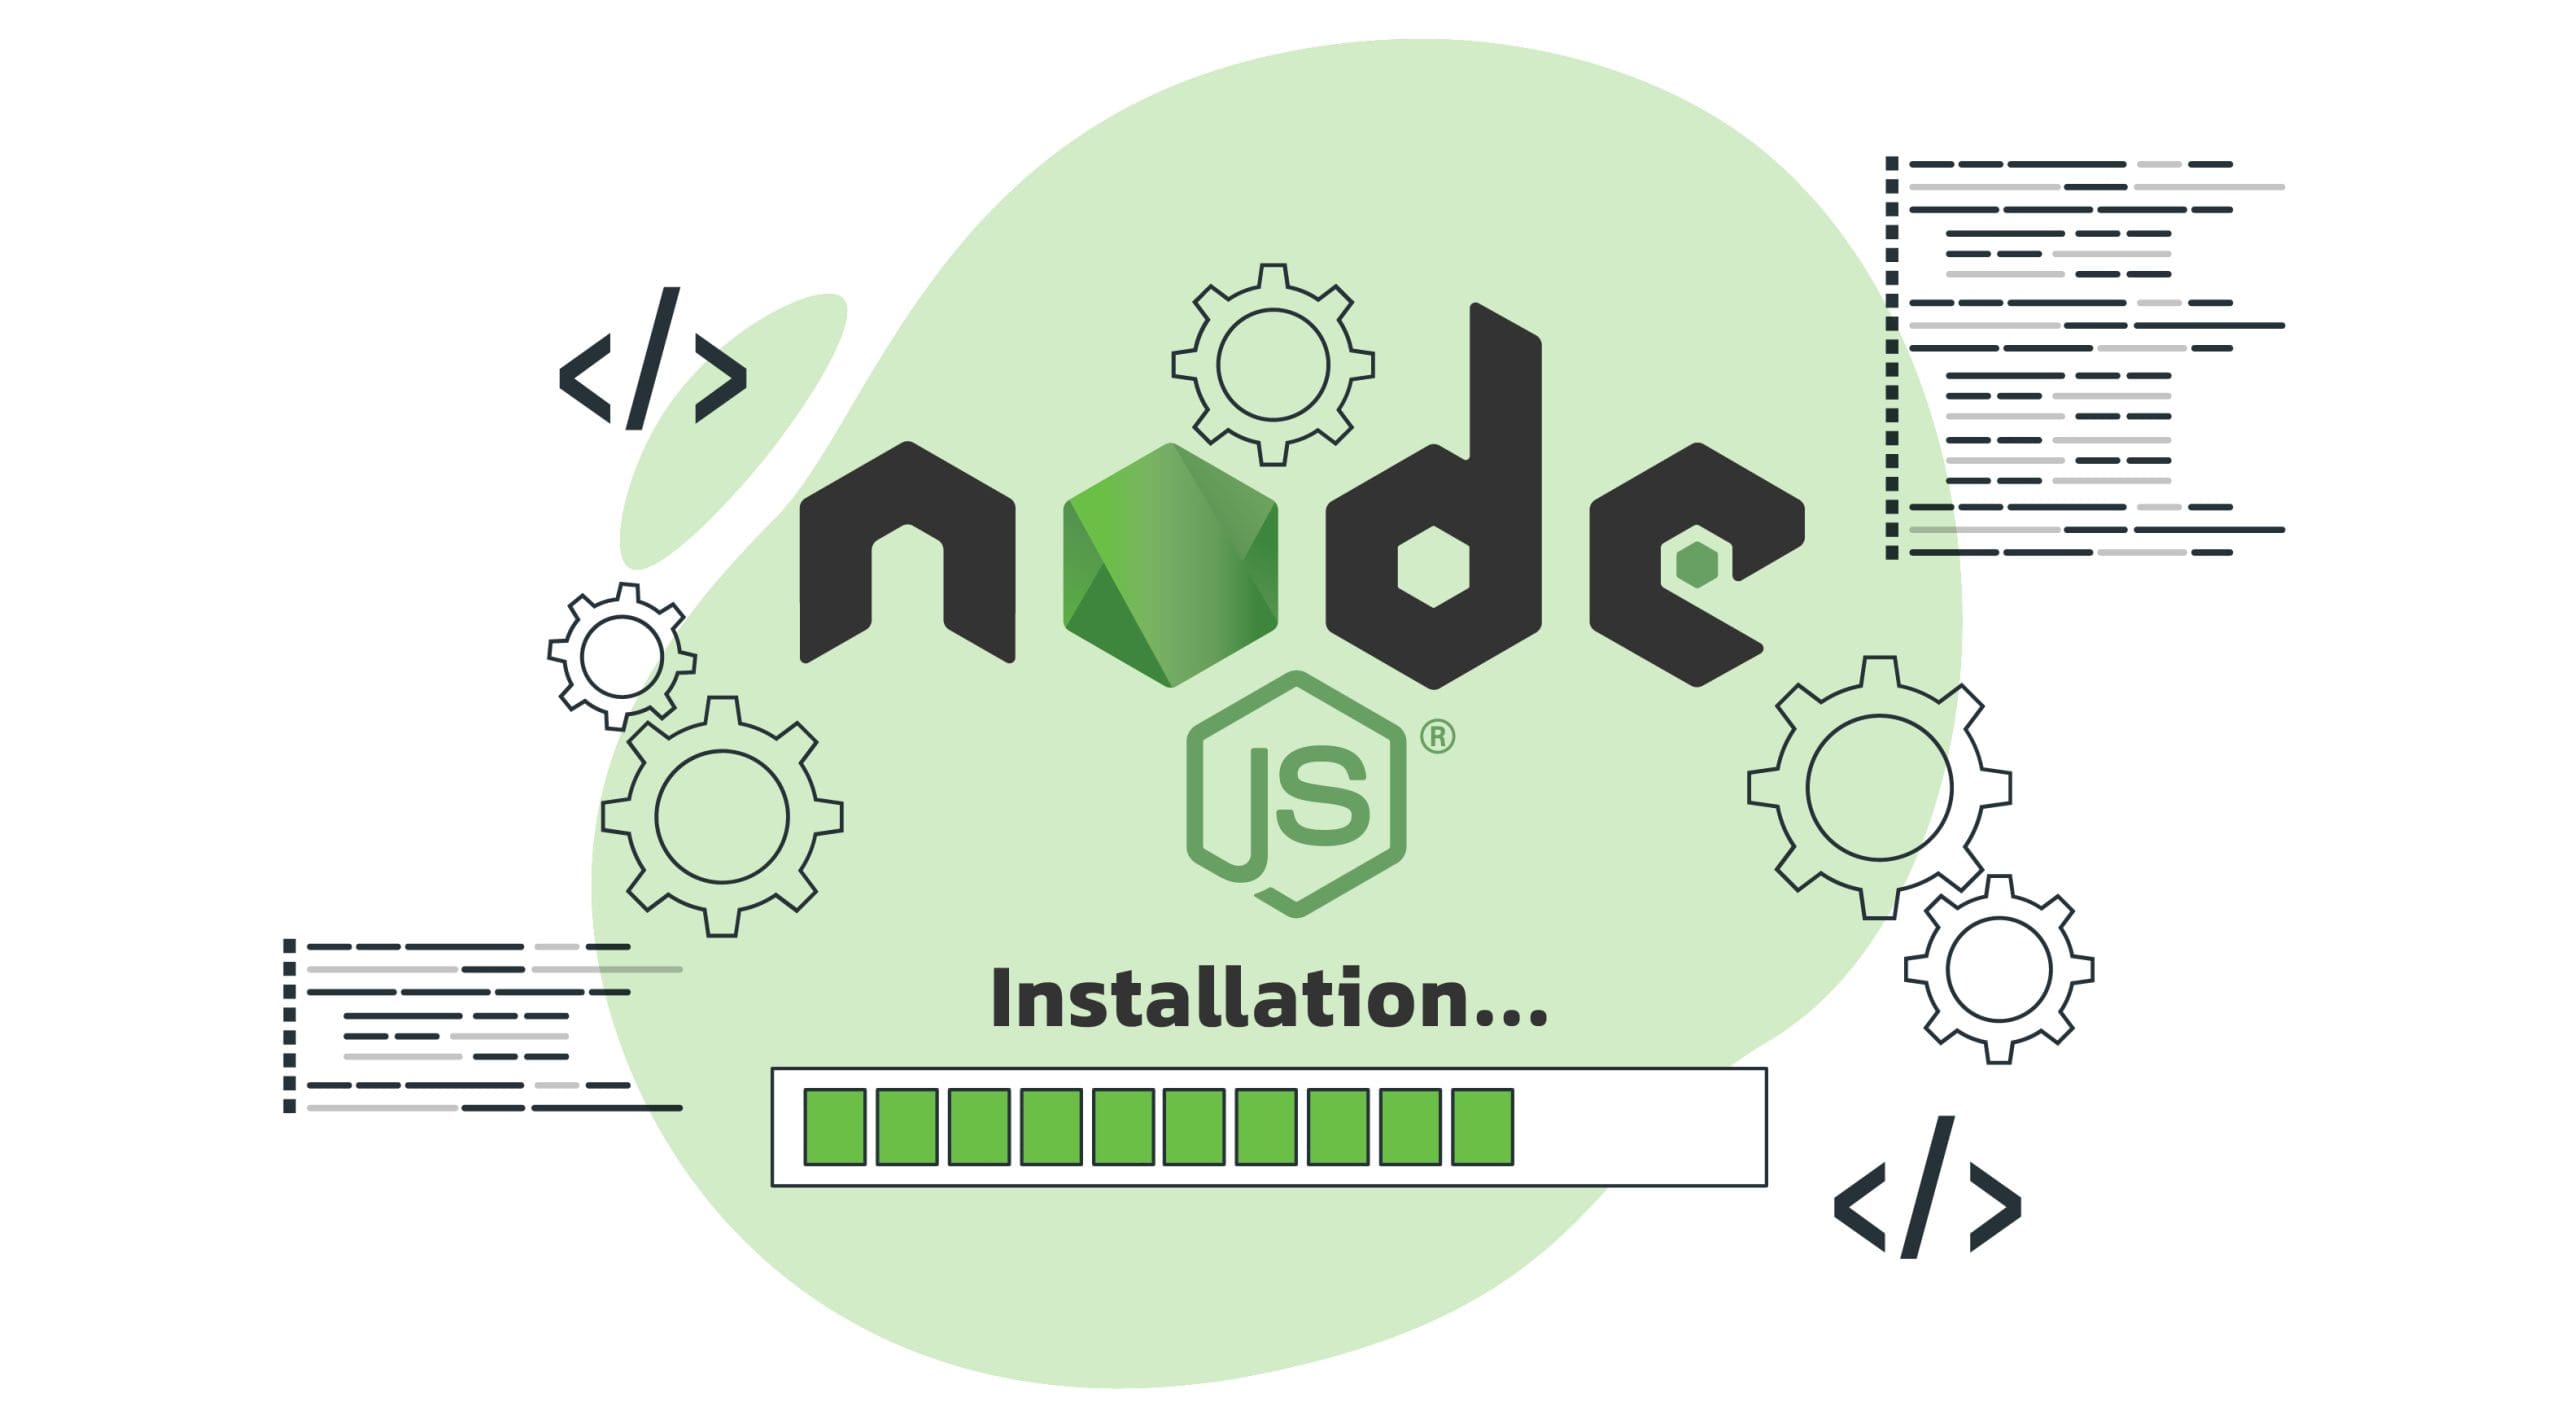 مراحل نصب Node.js, روش نصب Node.js در ویندوز, نصب Node.js با استفاده از مدیر بسته, نصب Node.js در لینوکس, نصب Node.js در macOS, نحوه بررسی نصب صحیح Node.js